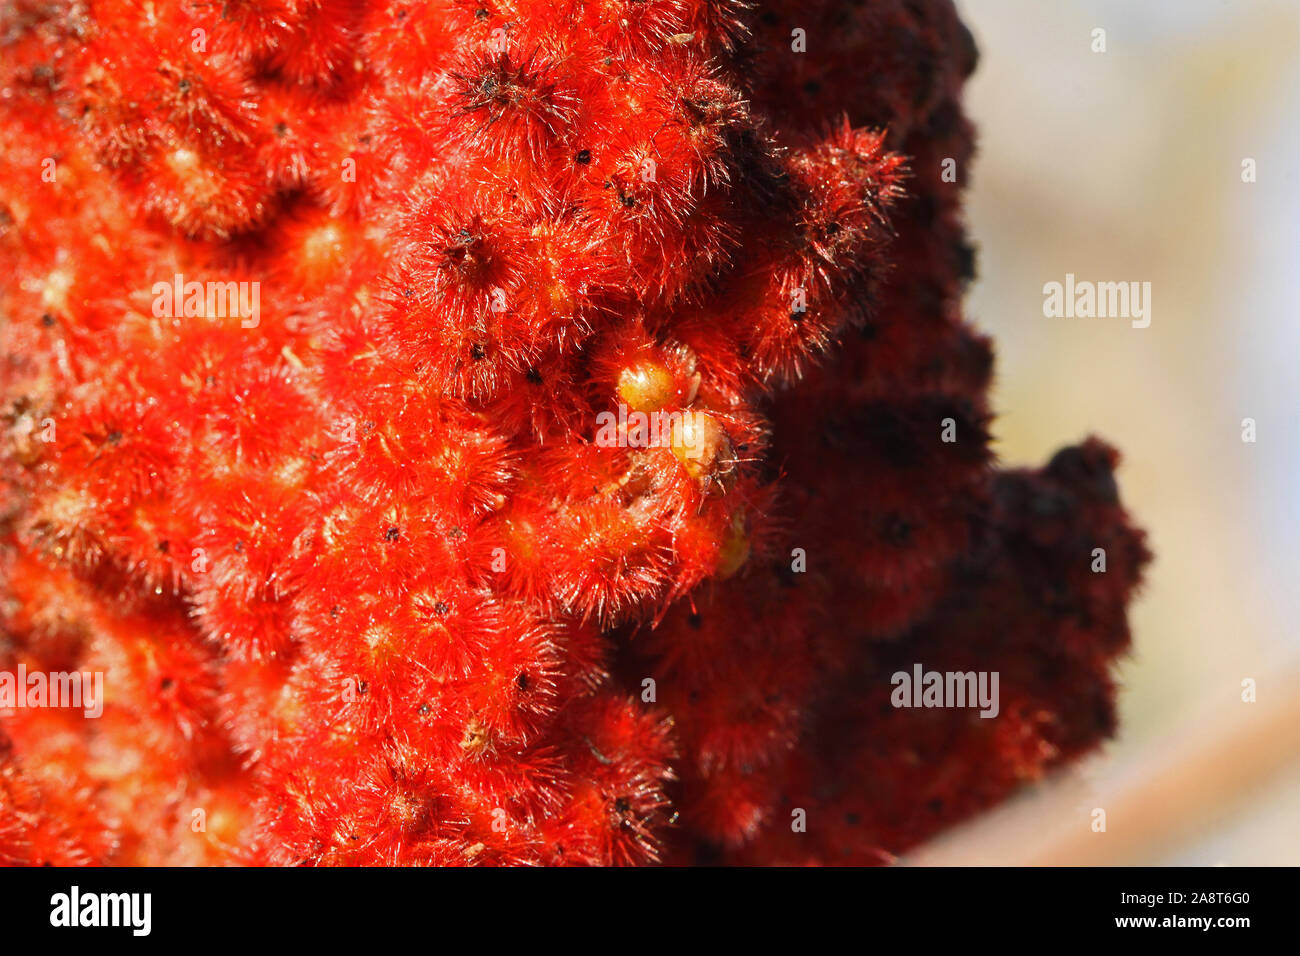 Leuchtend rote rhus oder Sumach sumach Samen auf eine reife Rispe auch genannt ein staghorn coriaria oder typhina aus der Familie der anacardiaceae oder Cashew Pflanzen Stockfoto